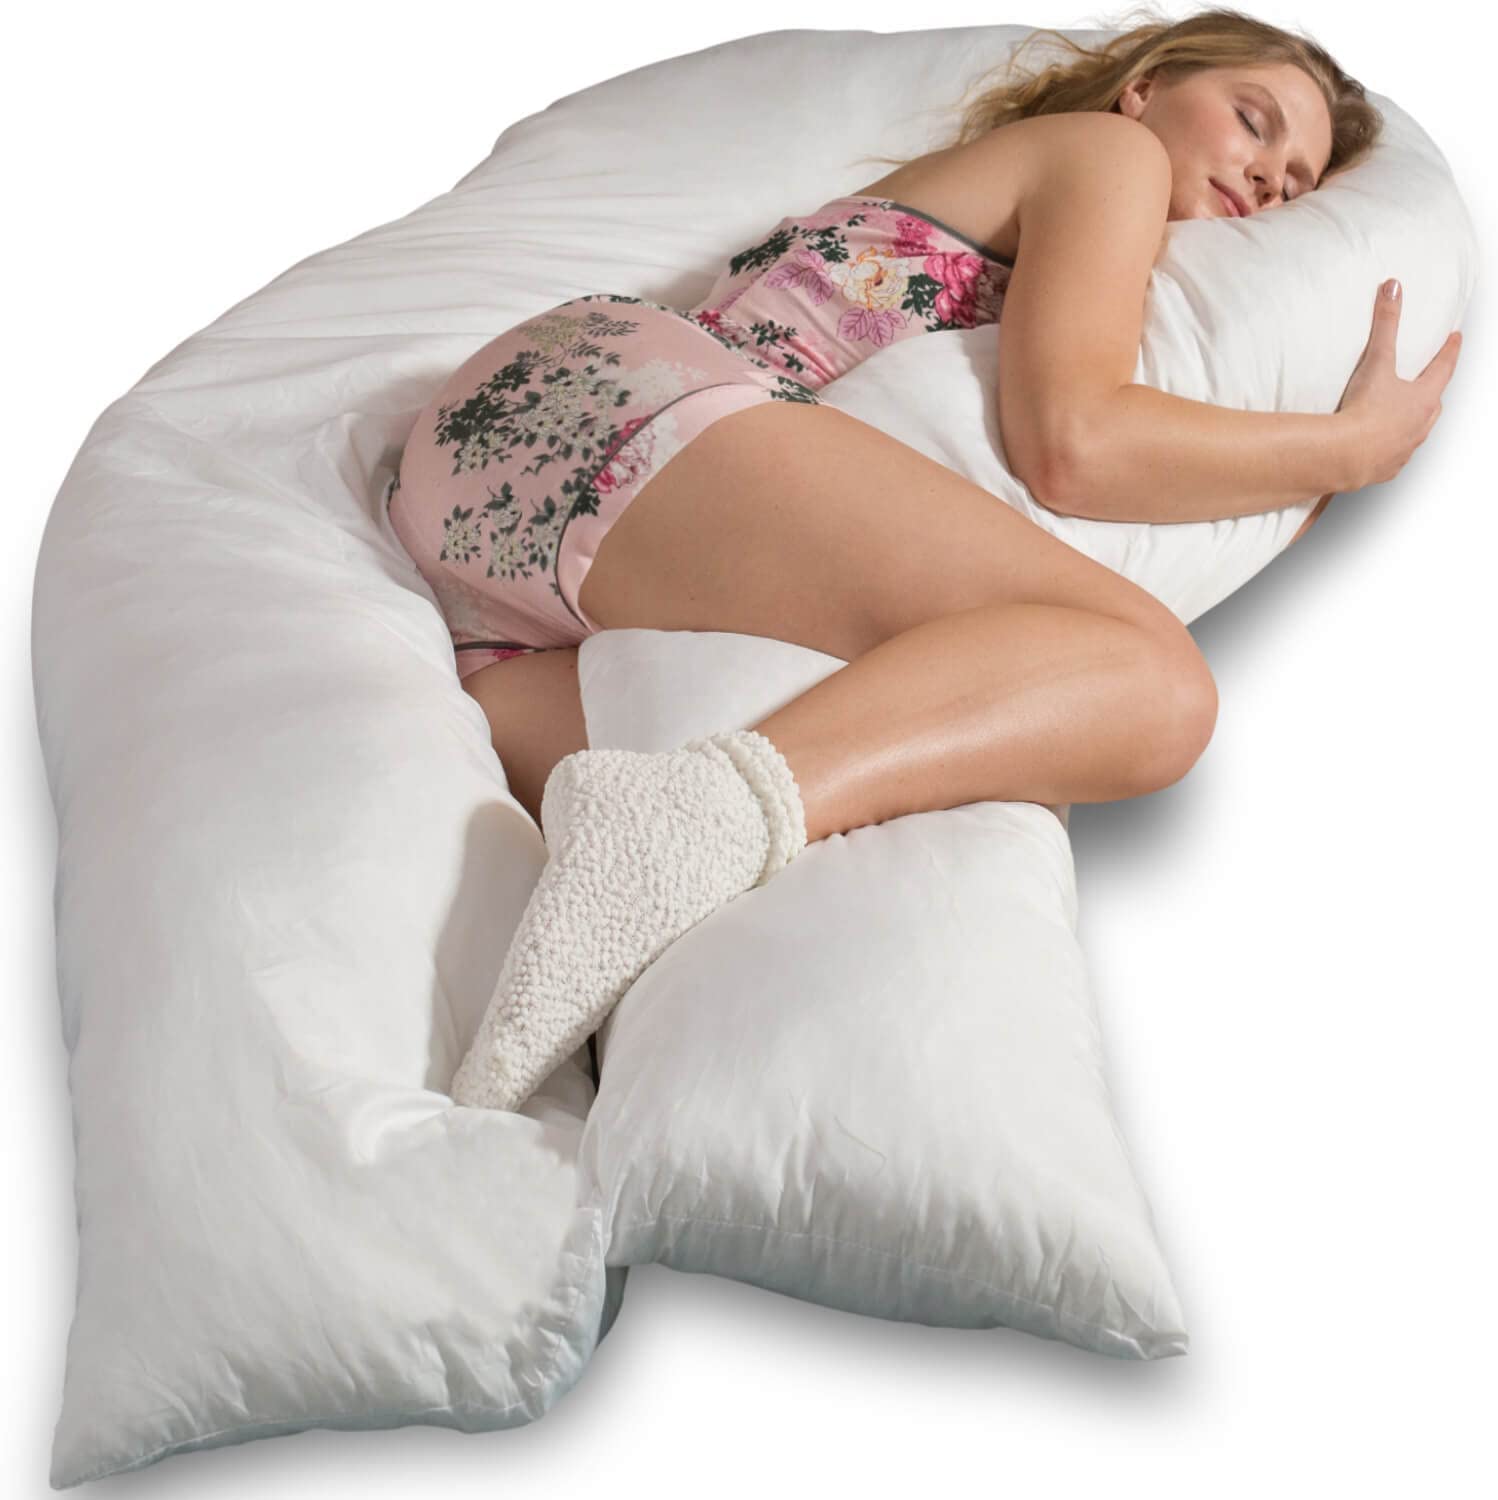 Traumreiter Jumbo XXL Side Sleeper Pillow Baby Pregnancy Pillow Support Pillow Cuddly Pillow Body Pillow